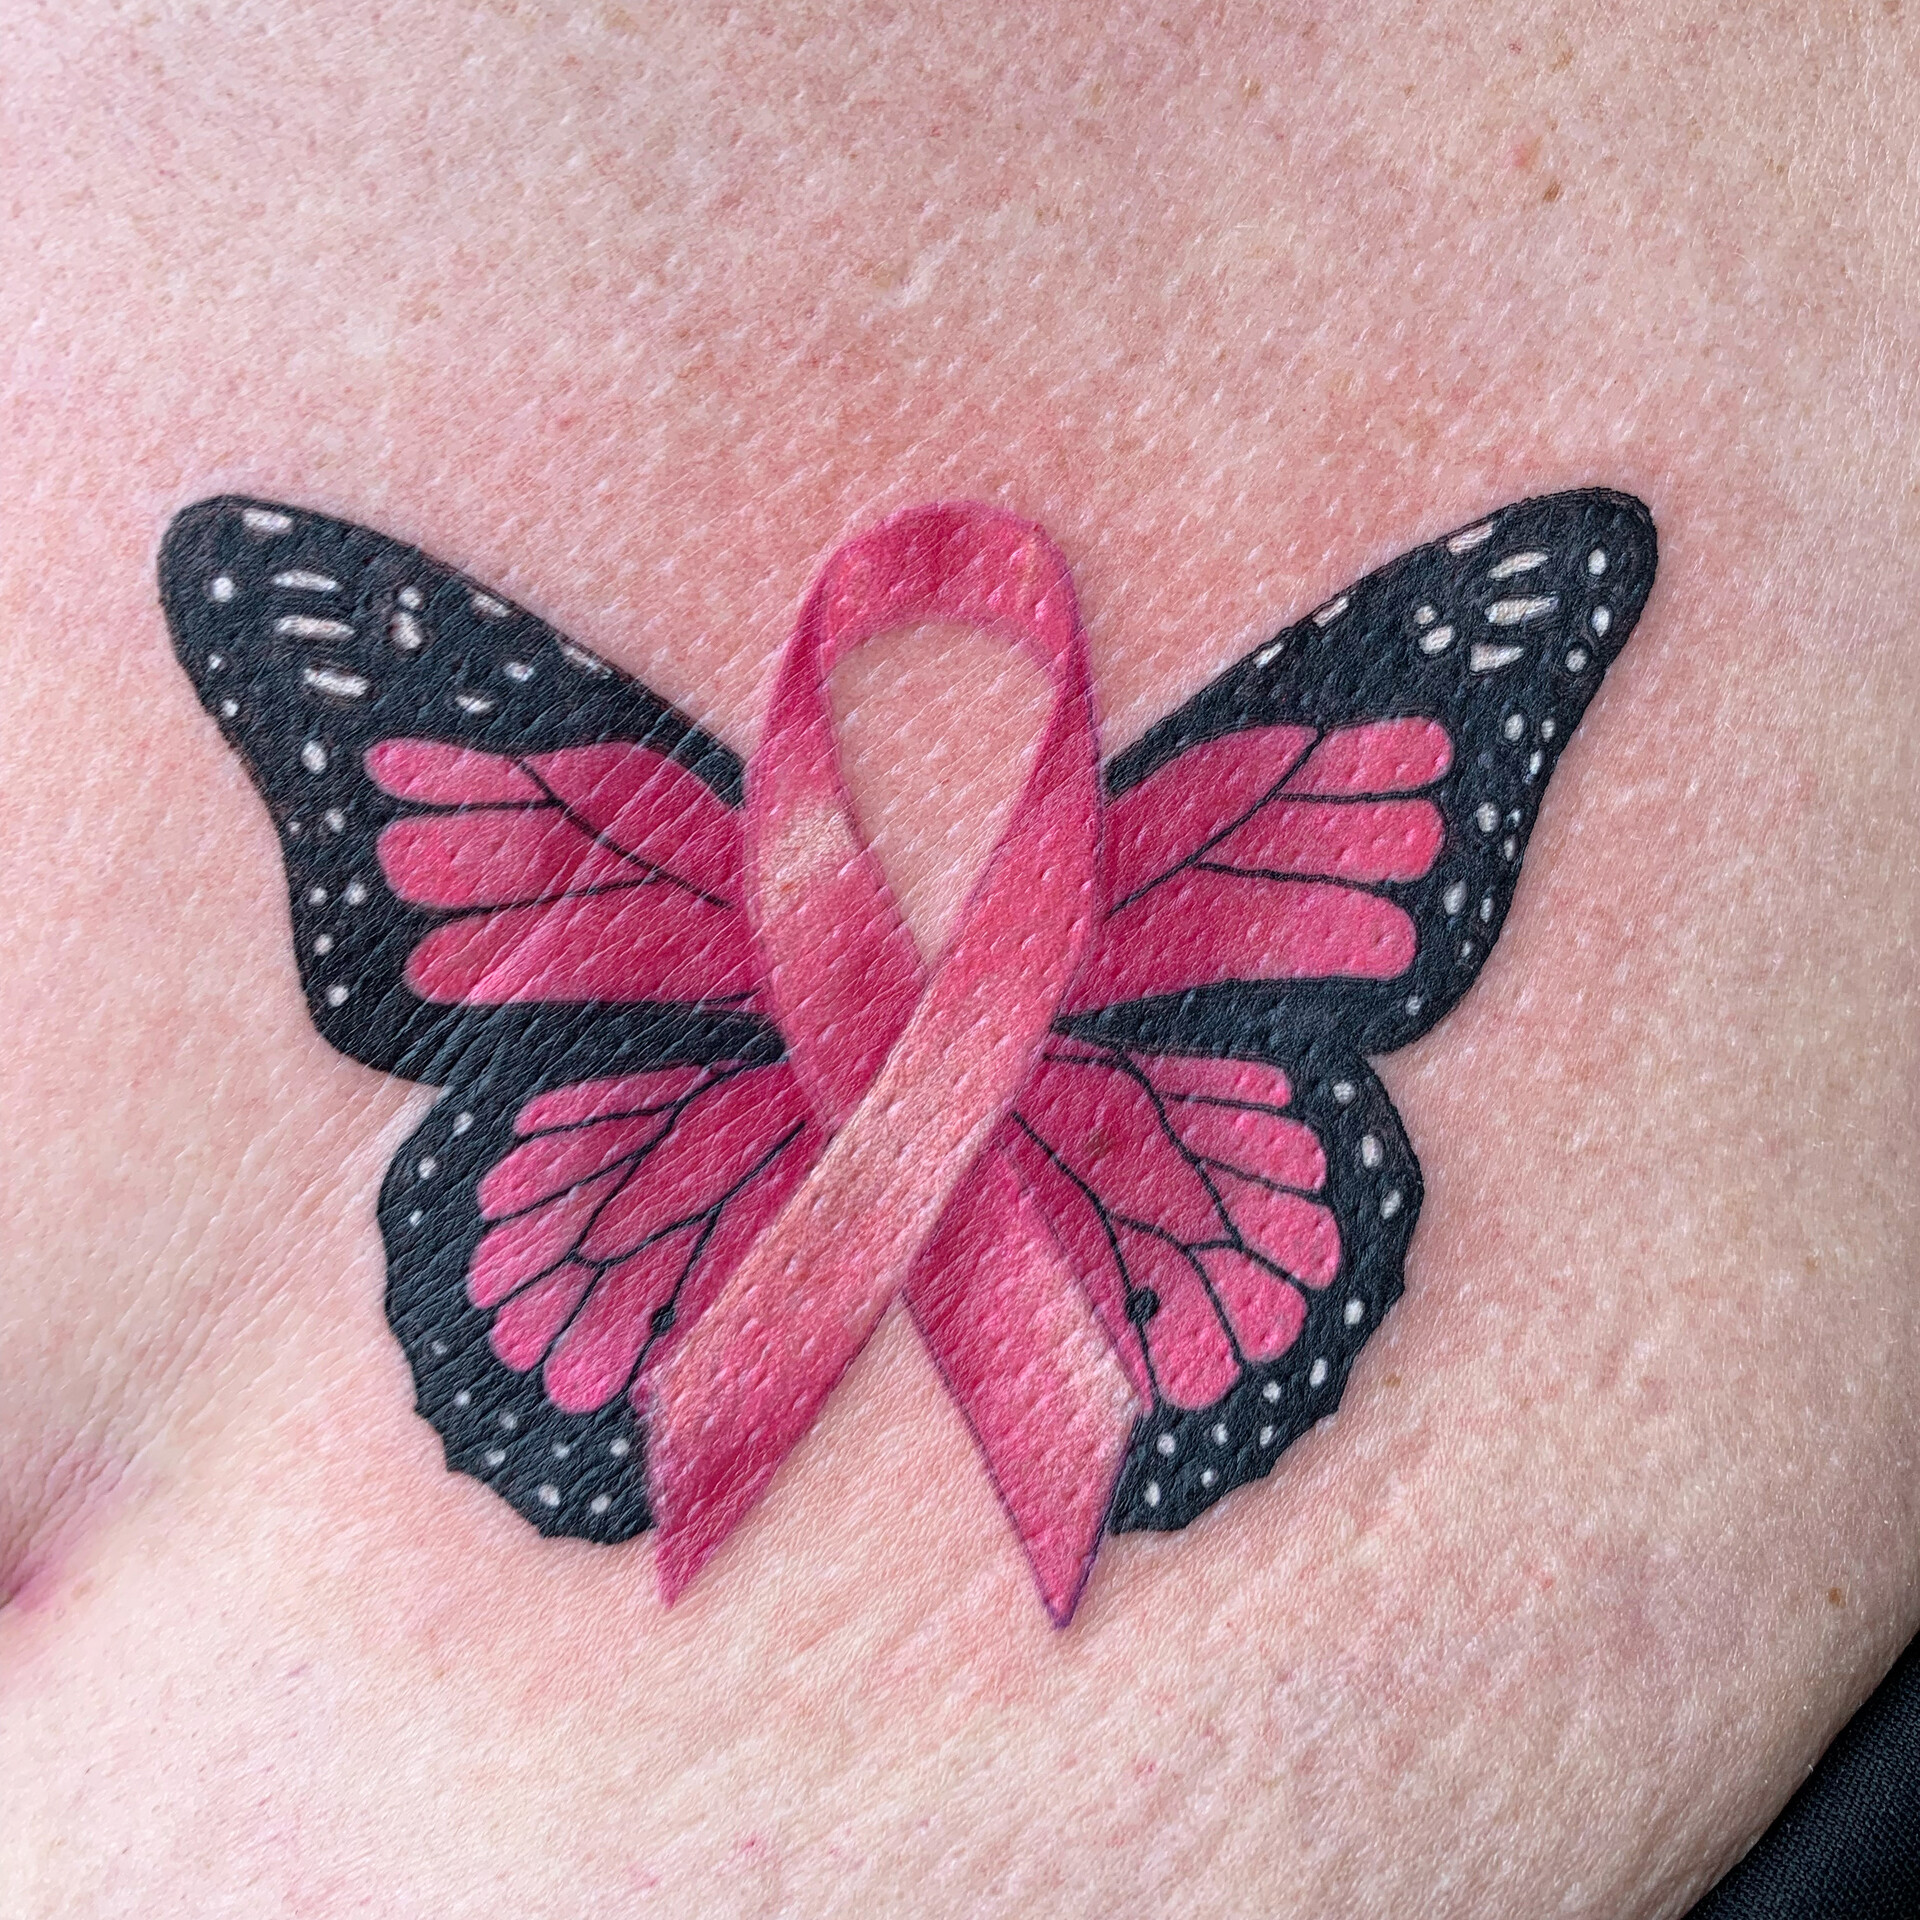 Artstation Breast Cancer Survivor Tattoo